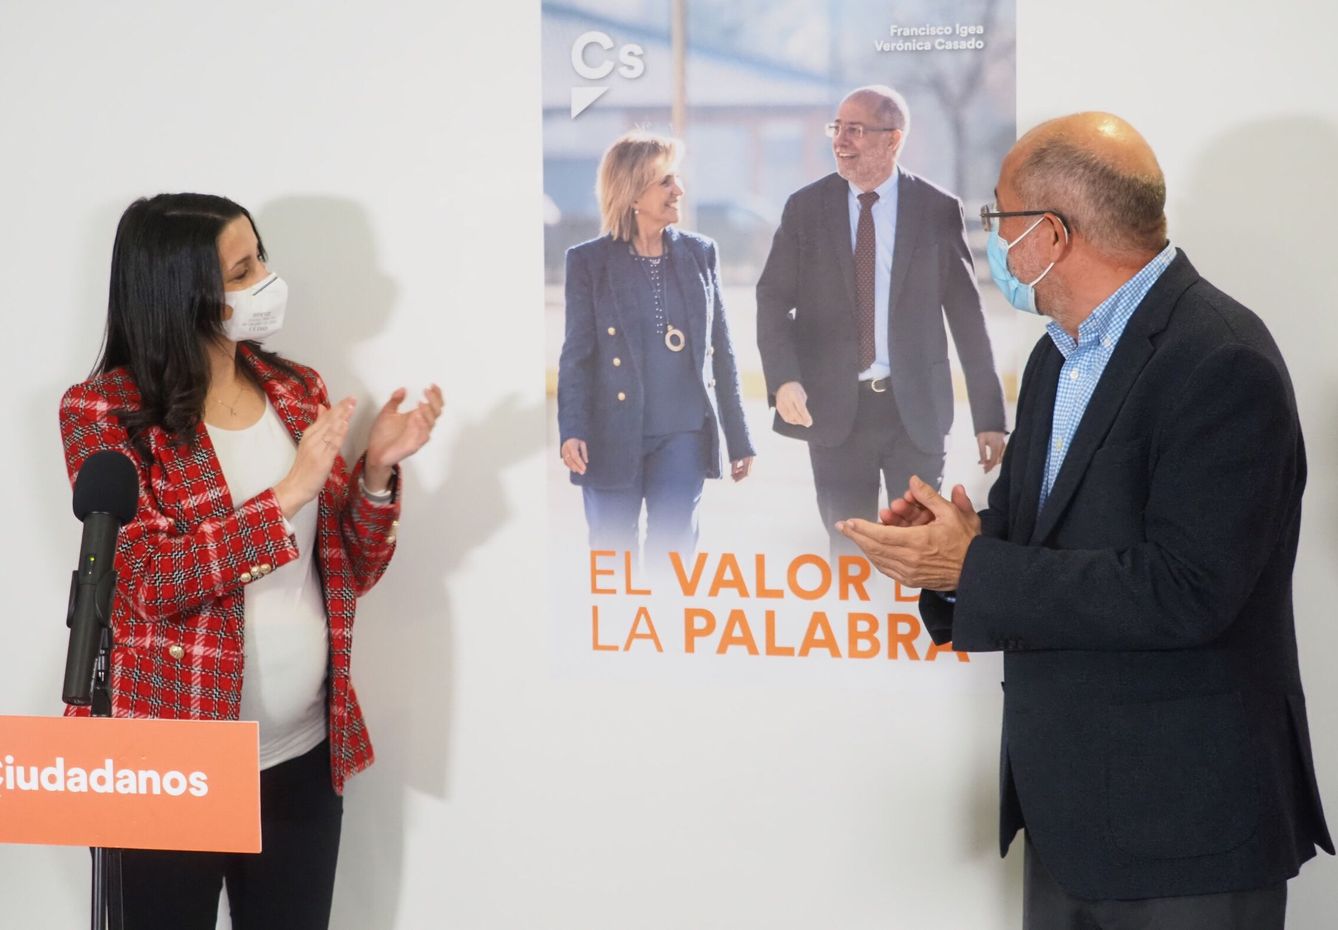 Arrimadas e Igea presentan uno de los carteles de campaña en que se puede ver al candidato junto a Verónica Casado. (EFE)